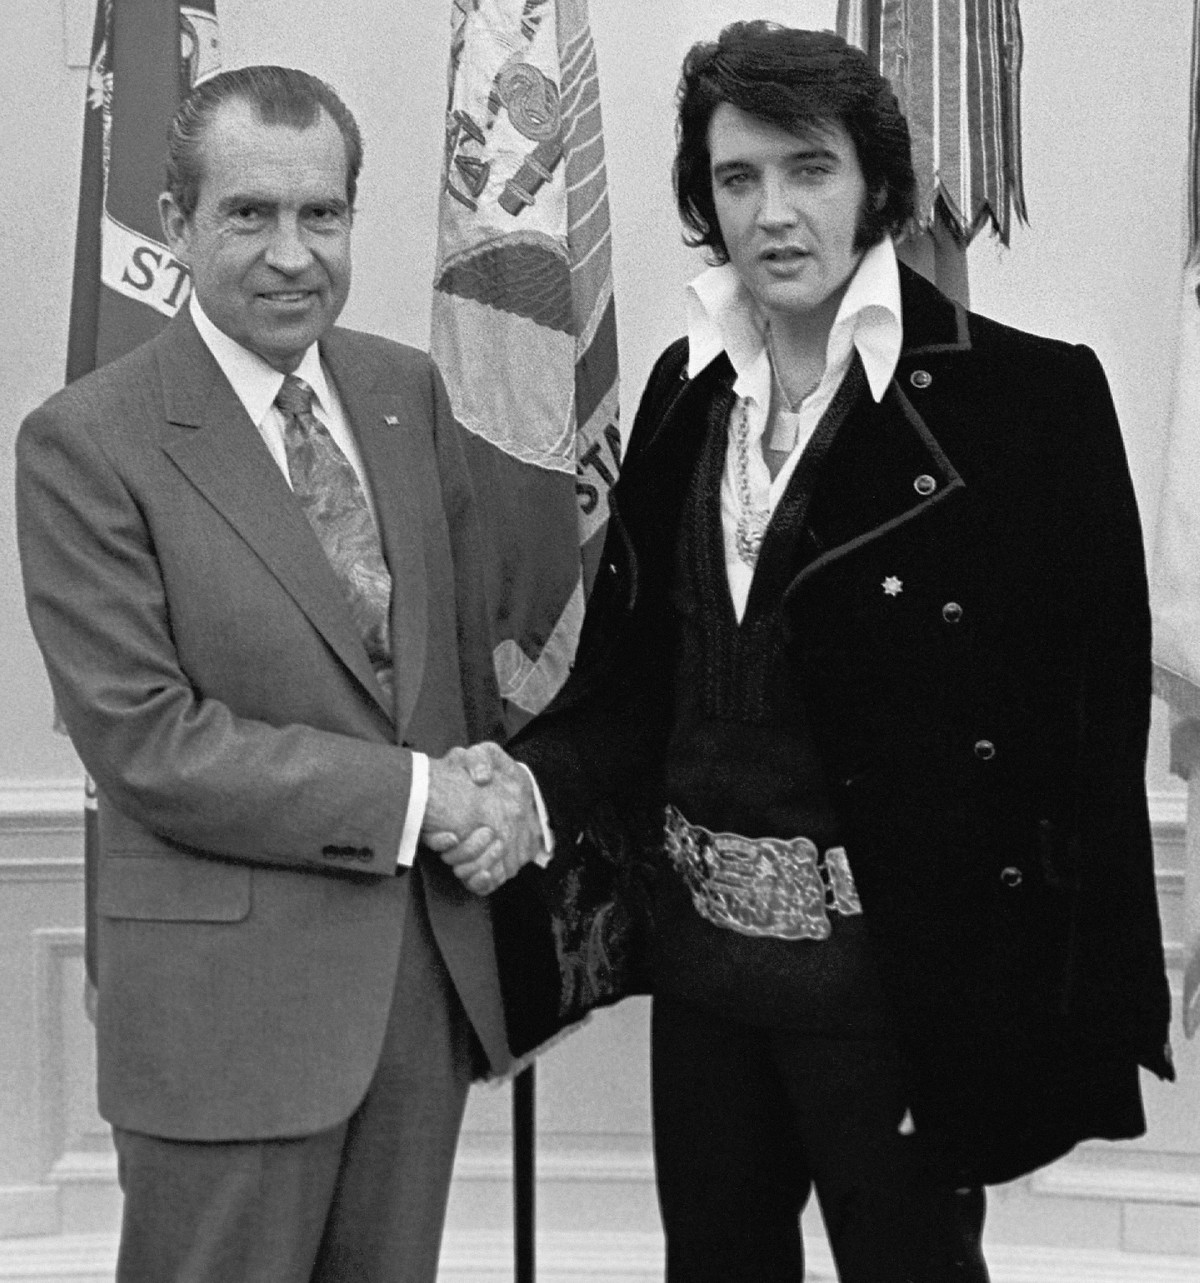 Элвис Пресли и Ричард Никсон, знаменитое рукопожатие...